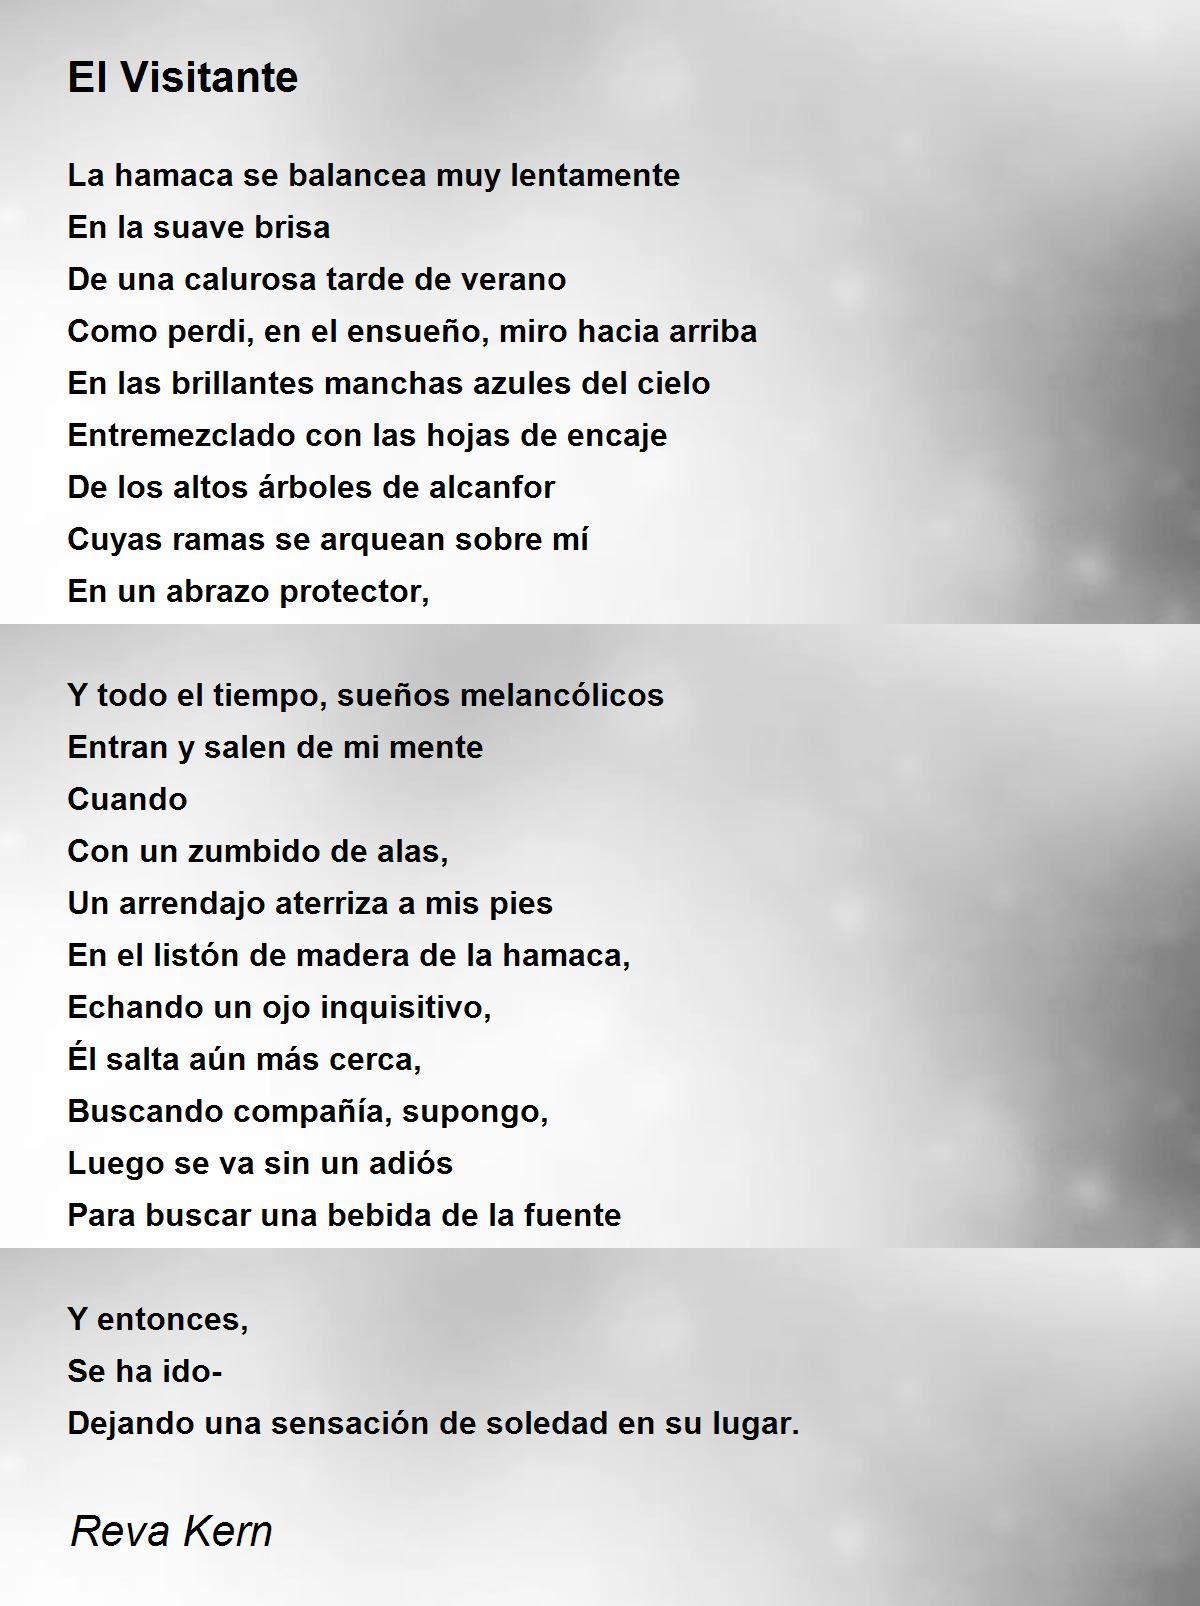 El Visitante by Reva Kern - El Visitante Poem